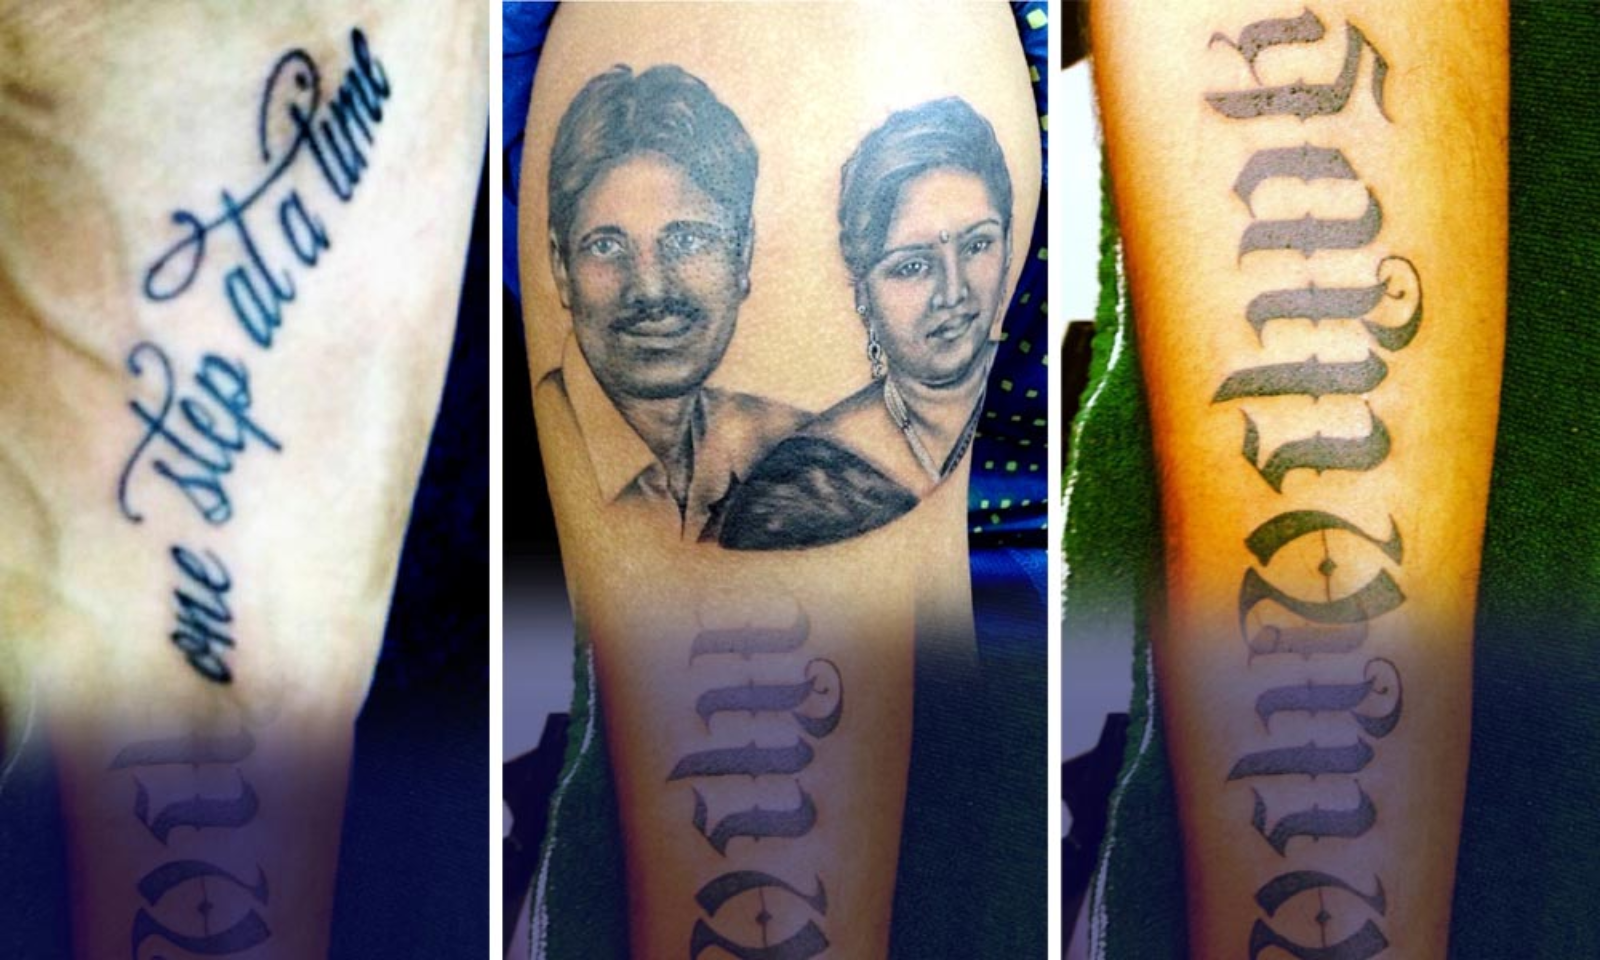 પરનટસન ફટથ લઈન પતનન નમ સધ Suryakumarન બડ પર છ આવ  ટટઓન કલકશન જઓ PHOTOS  t20 world cup suryakumar yadav tattoos on  body photos